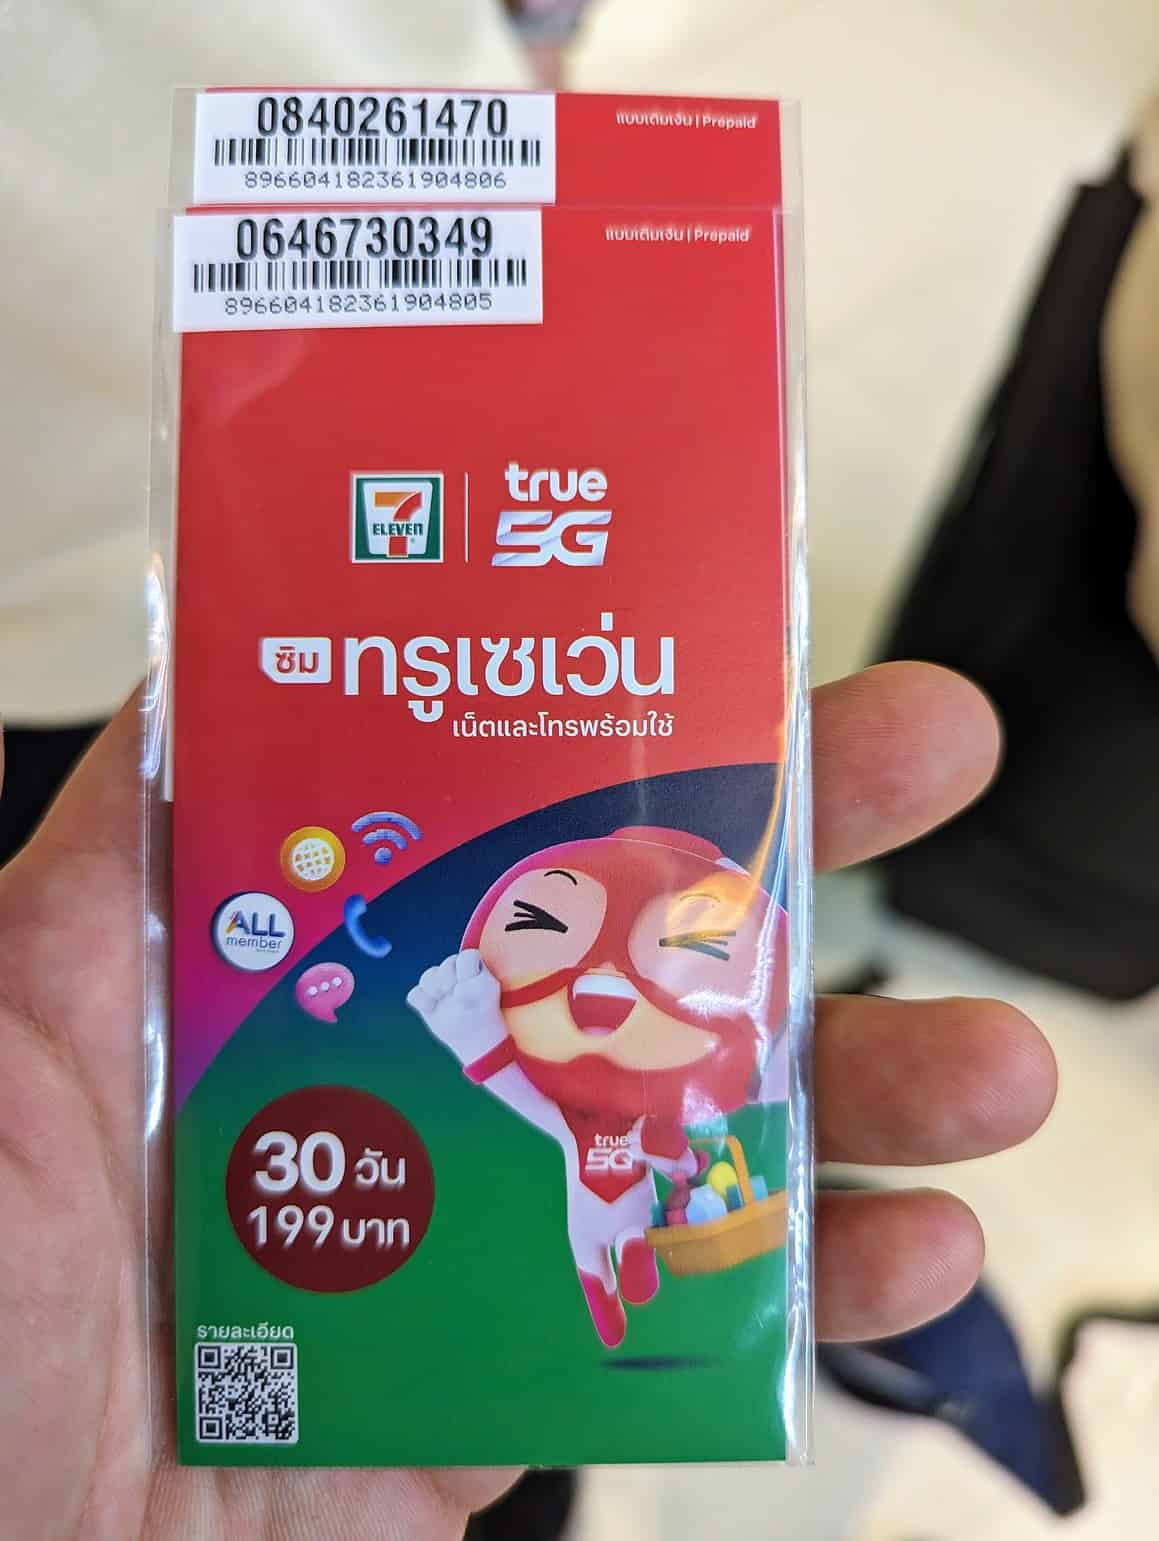 Internet und SIM-Karte in Ihrem Telefon während Ihres Aufenthalts in Thailand 2